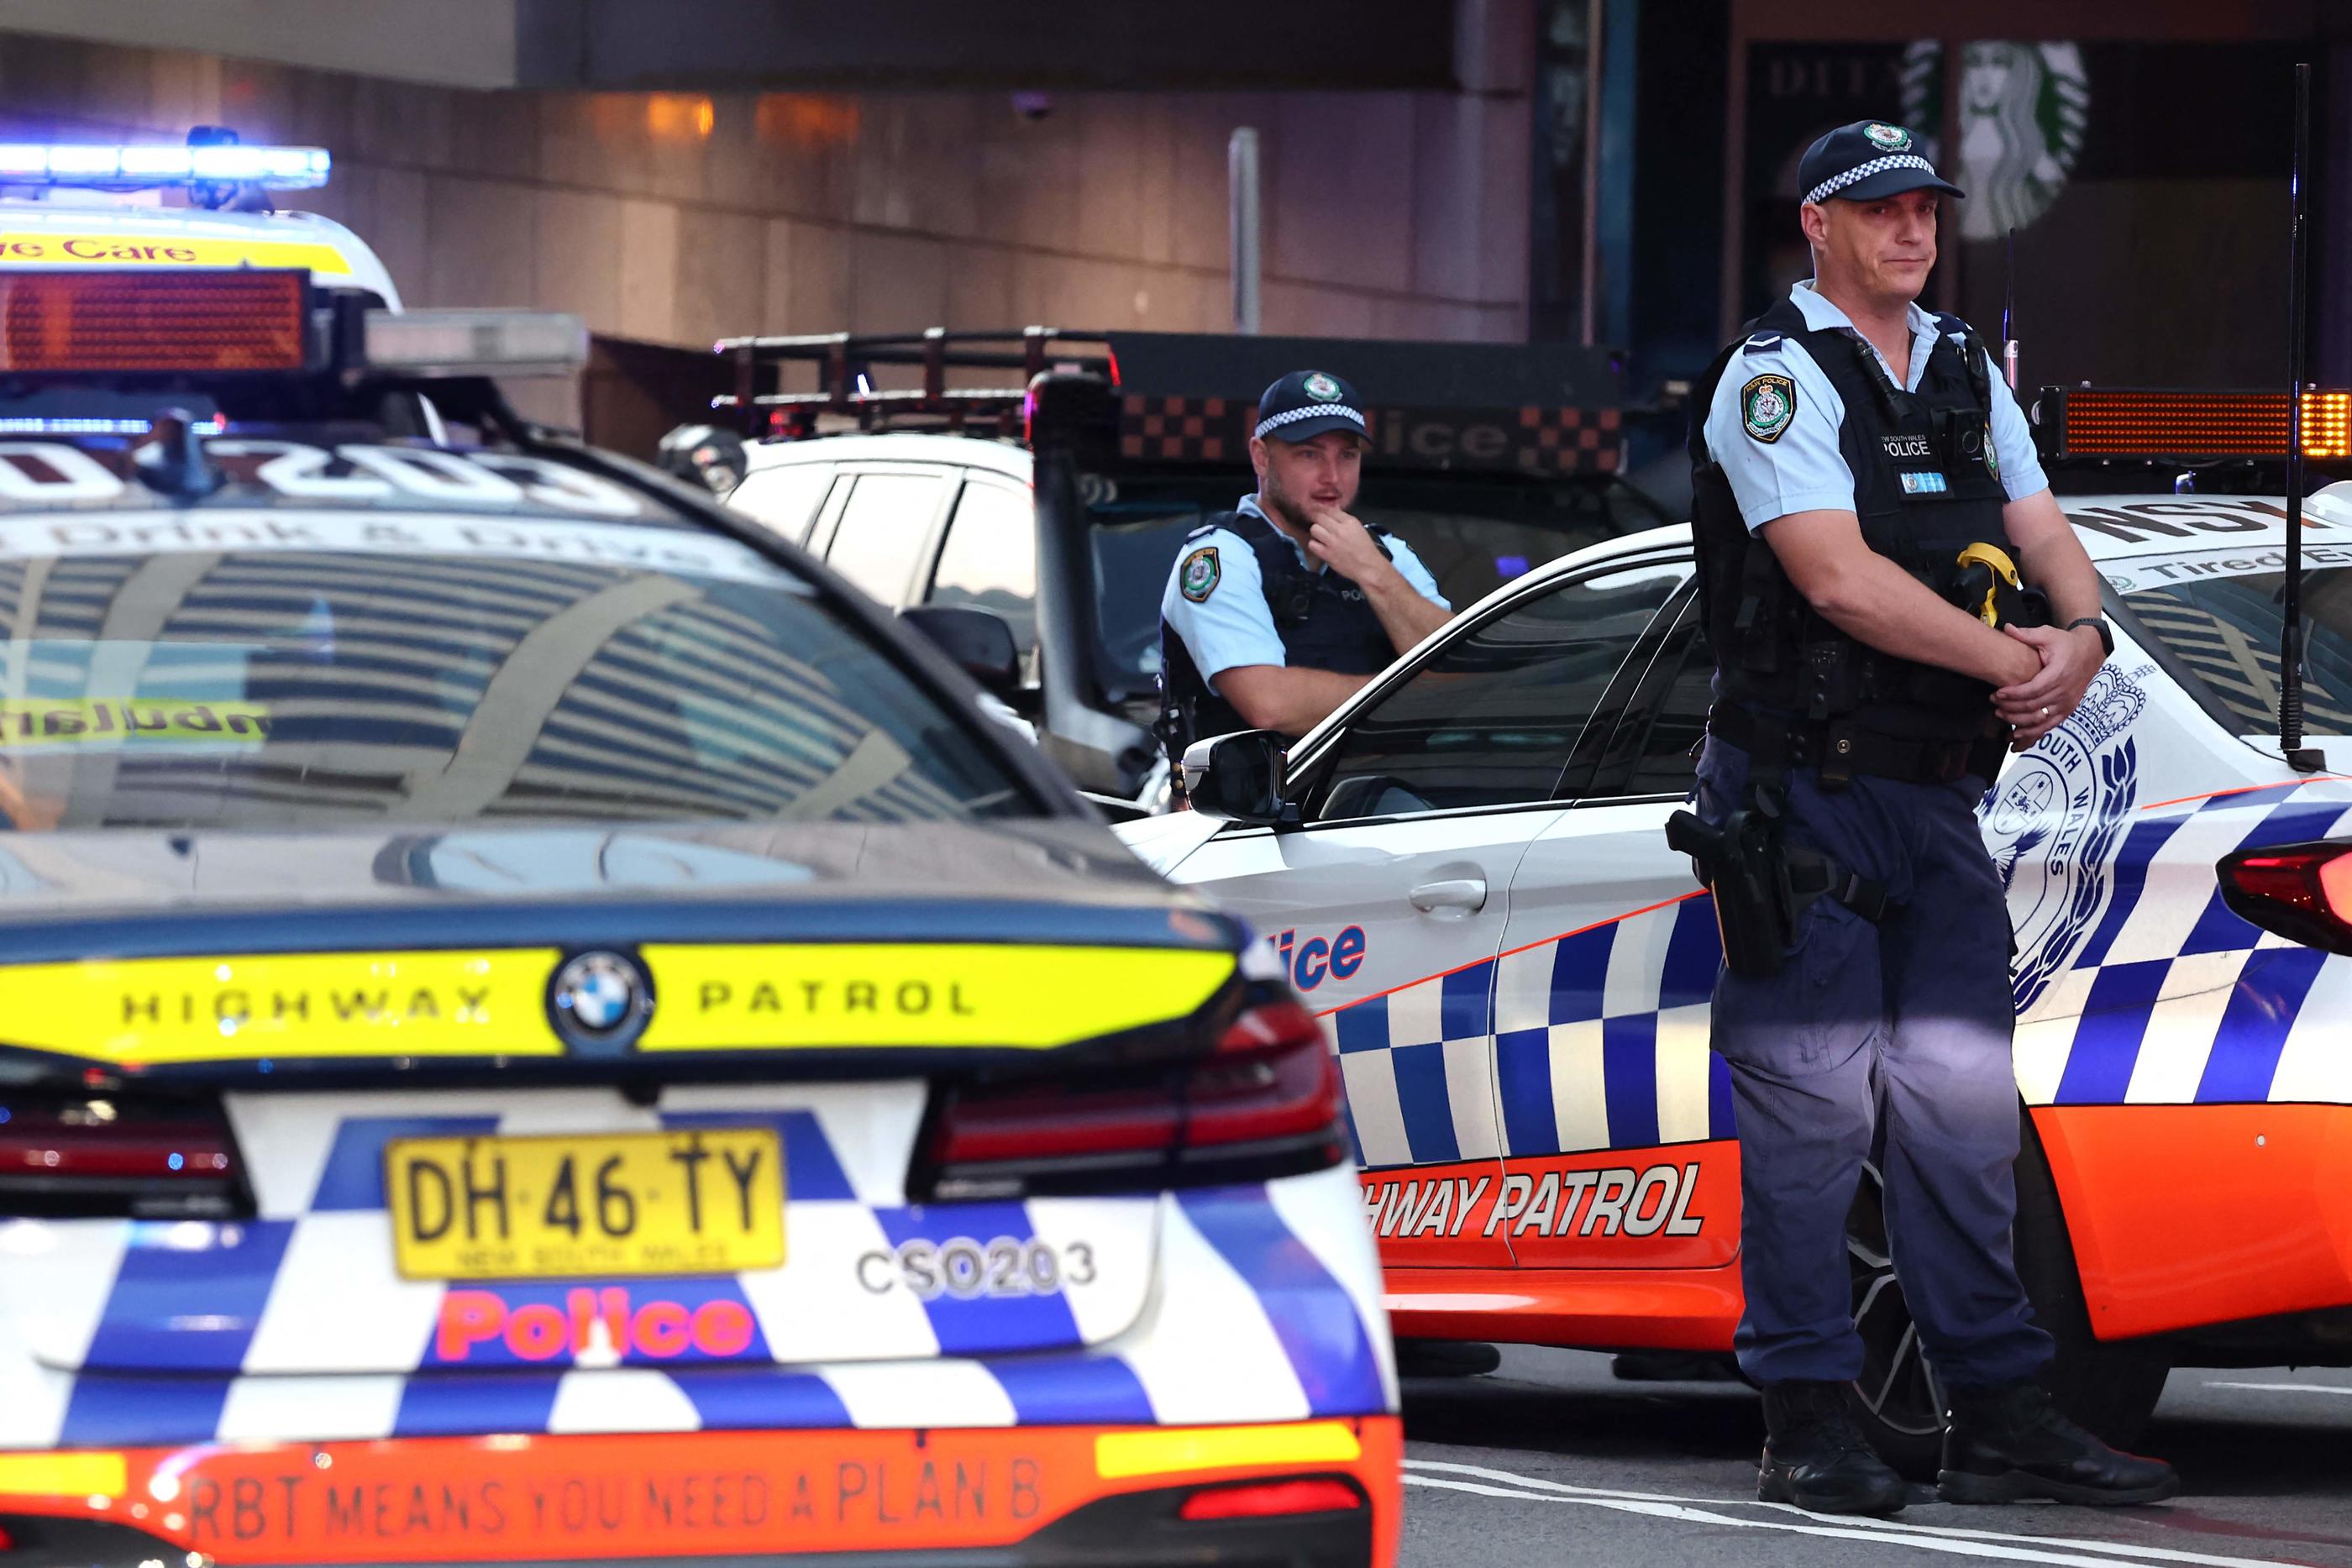 Samedi déjà, une attaque au couteau avait fait six morts dans un centre commercial à Sydney. AFP/David GRAY